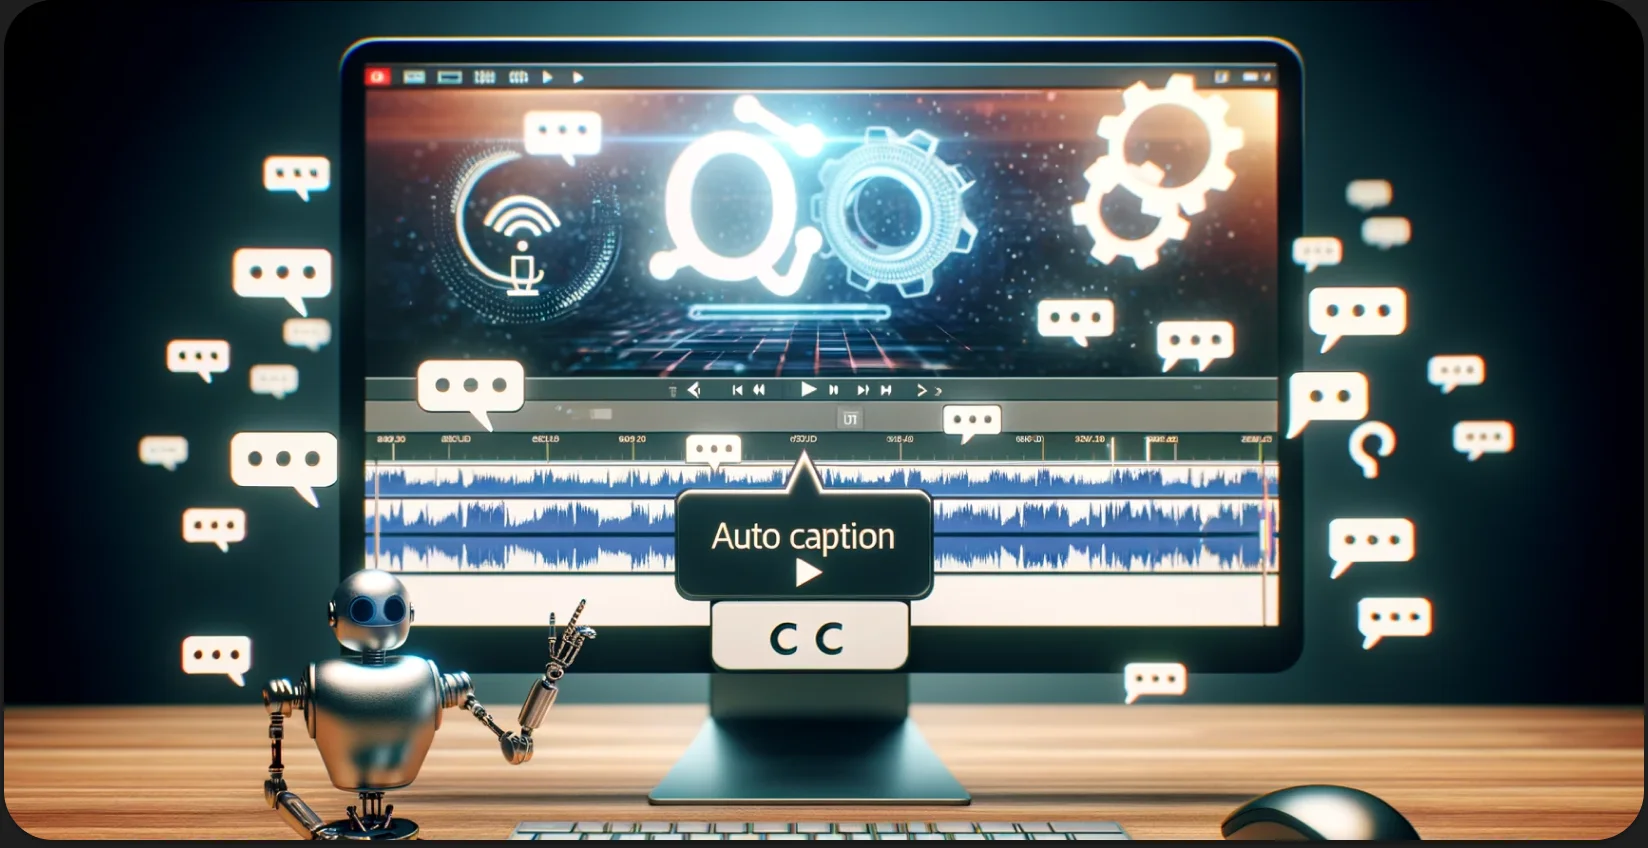 Uma configuração de desktop com legendas automáticas exibidas na tela, acompanhadas por uma estatueta de robô.